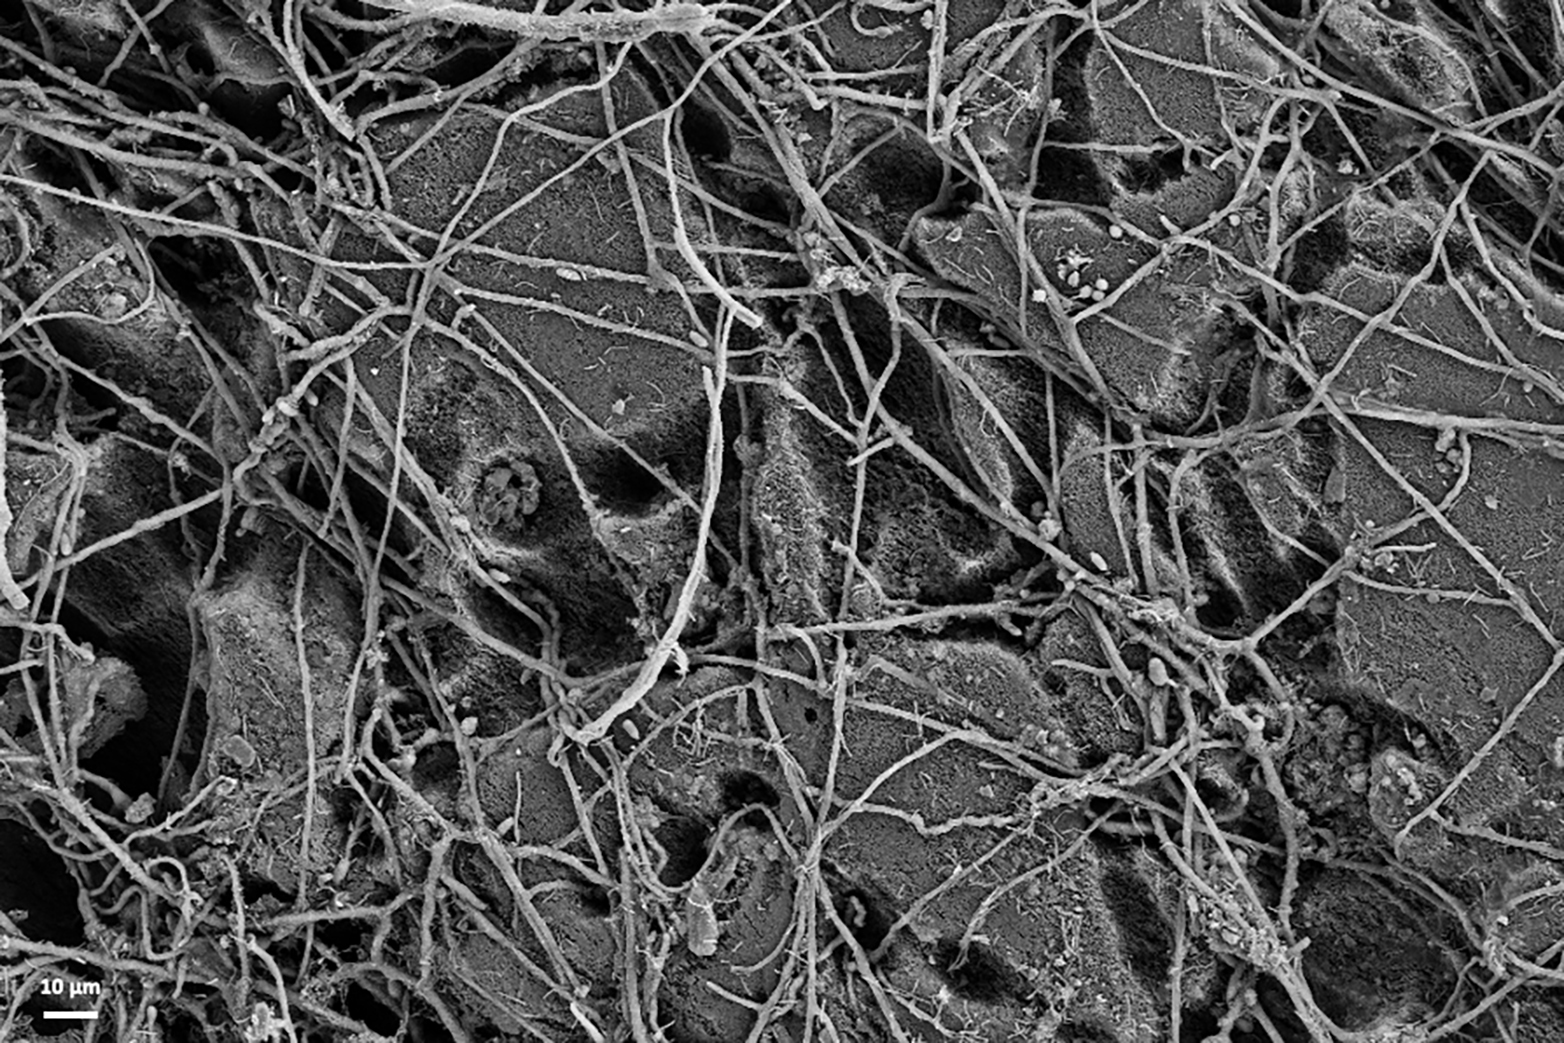 Elektronenmikroskopiebild von Plastik und Pilzfäden, die sich darauf angesiedelt haben